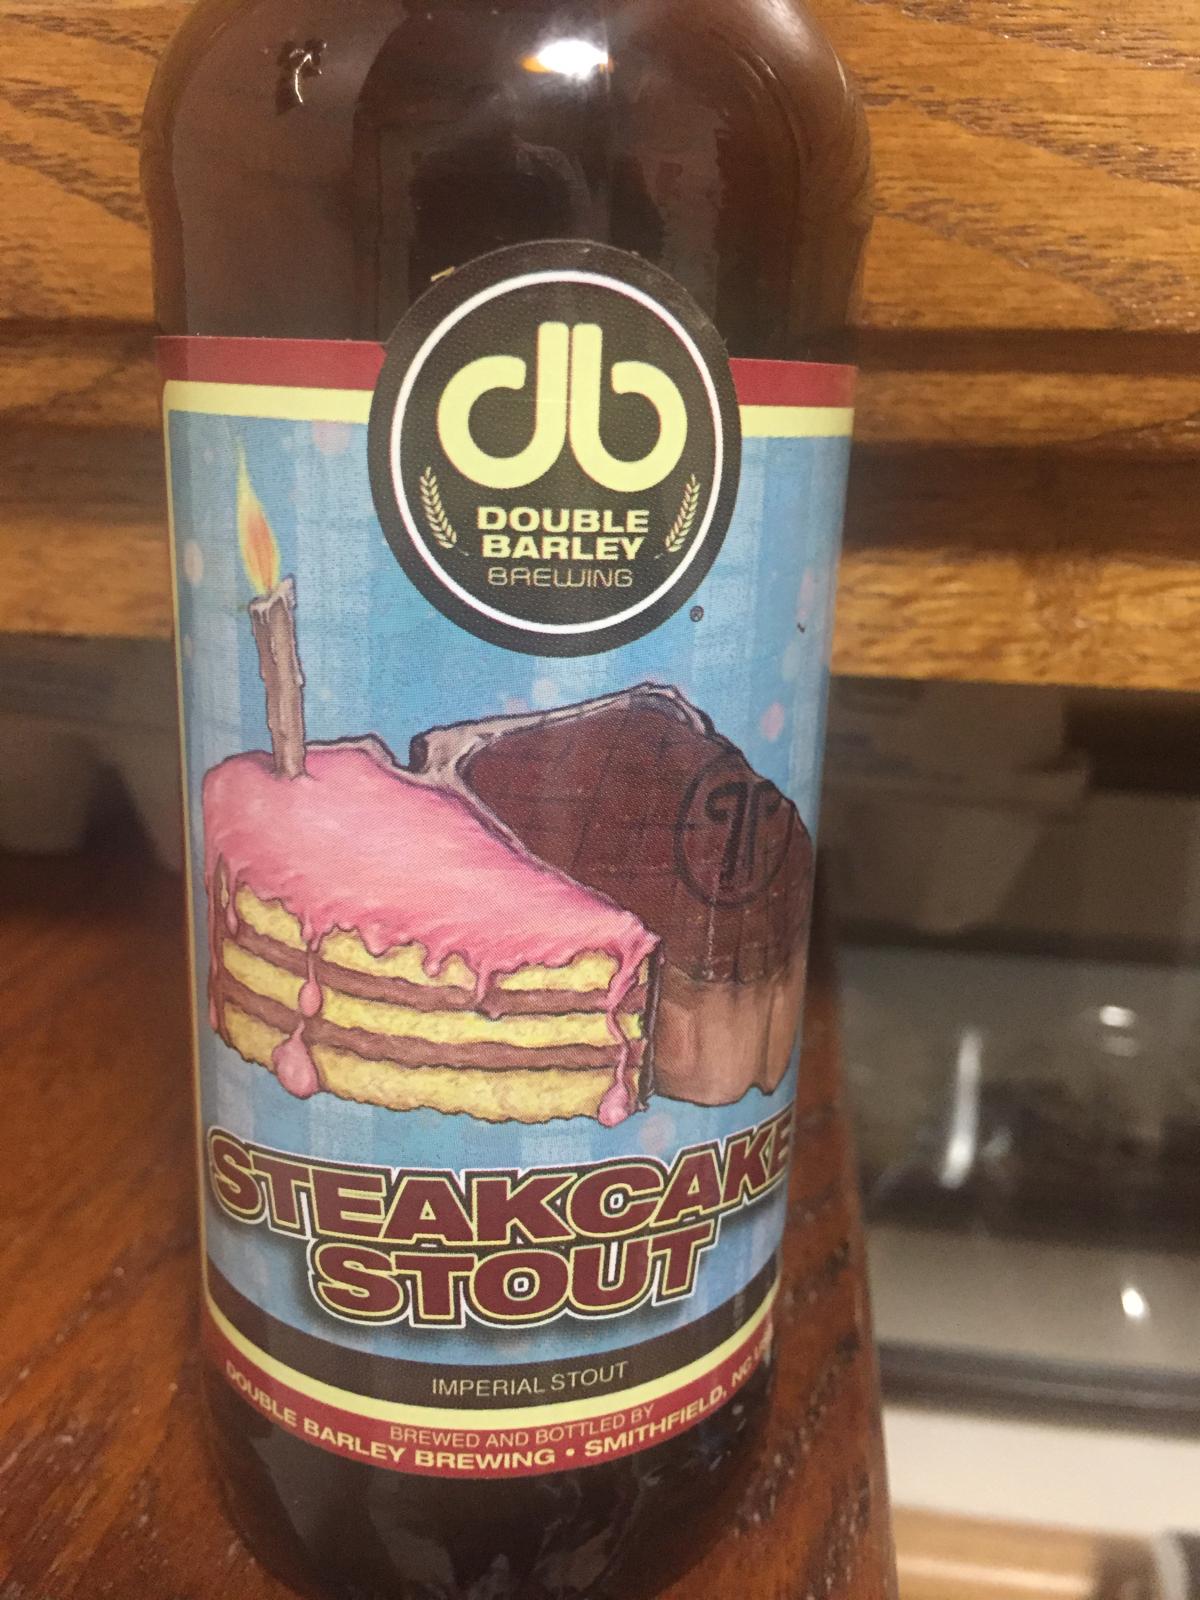 Steakcake Stout